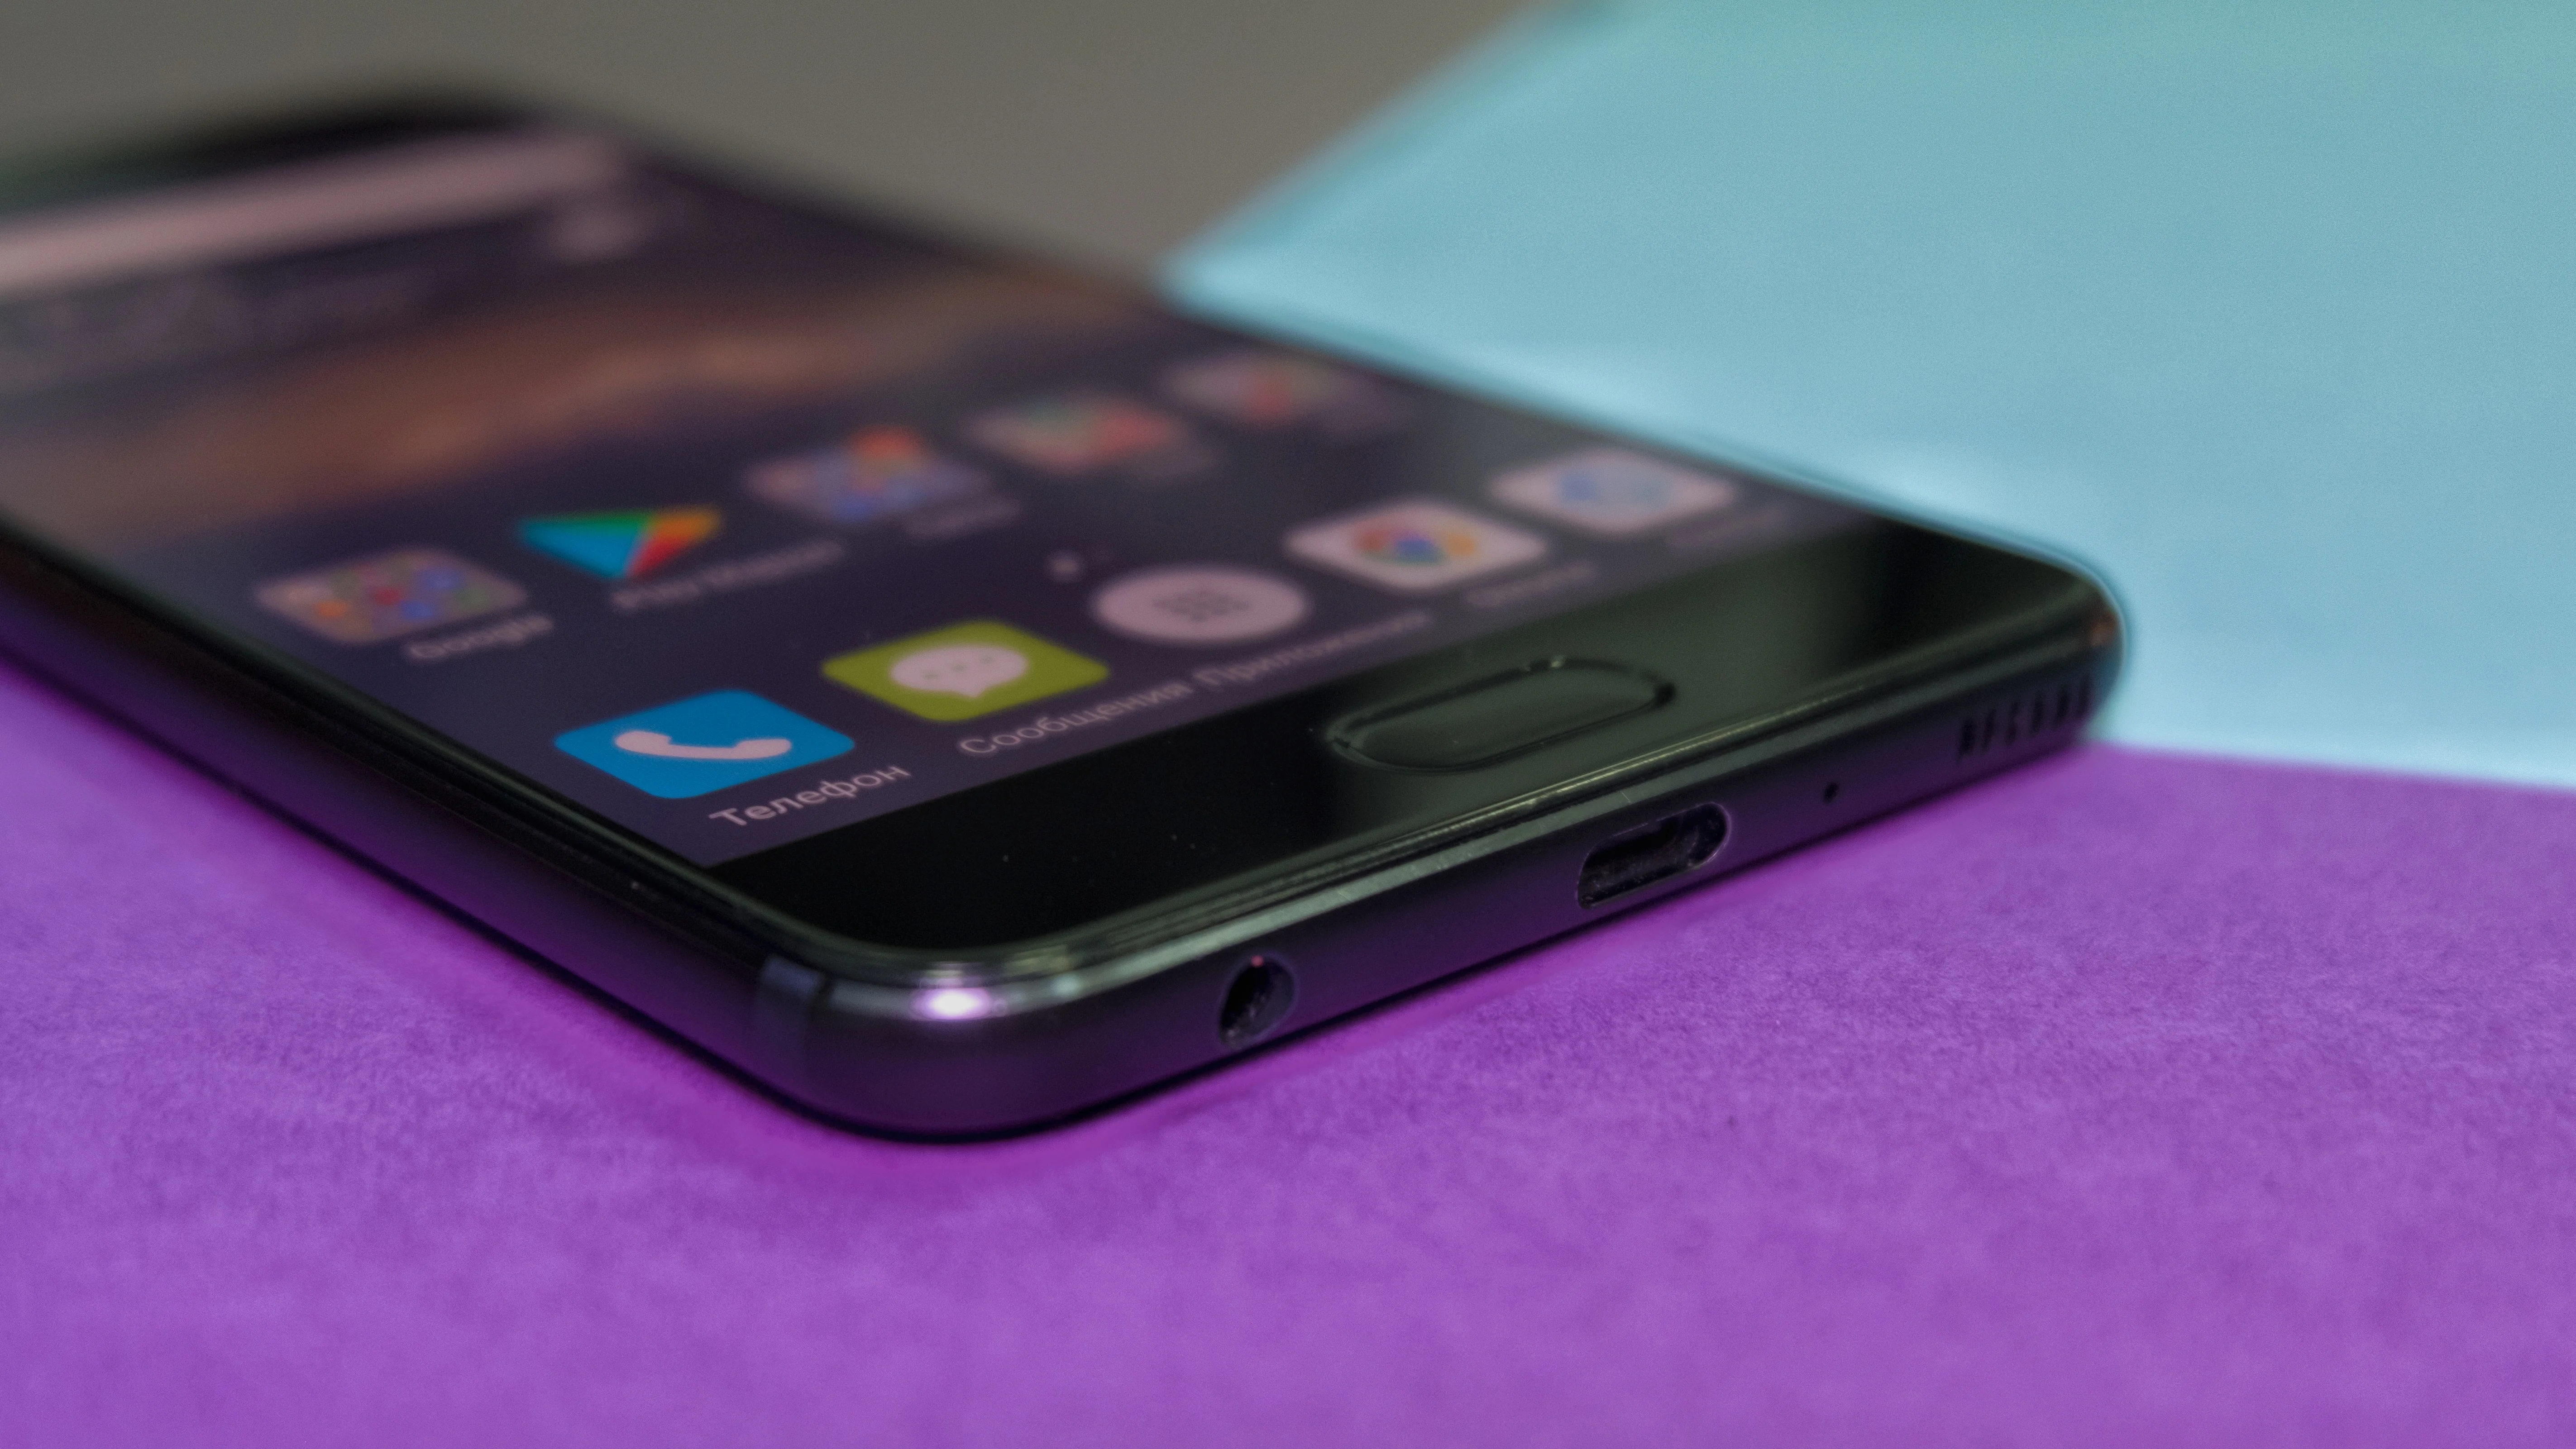 Обзор Huawei P10 Plus — достойный флагман, который зачем-то похож на iPhone - фото 1